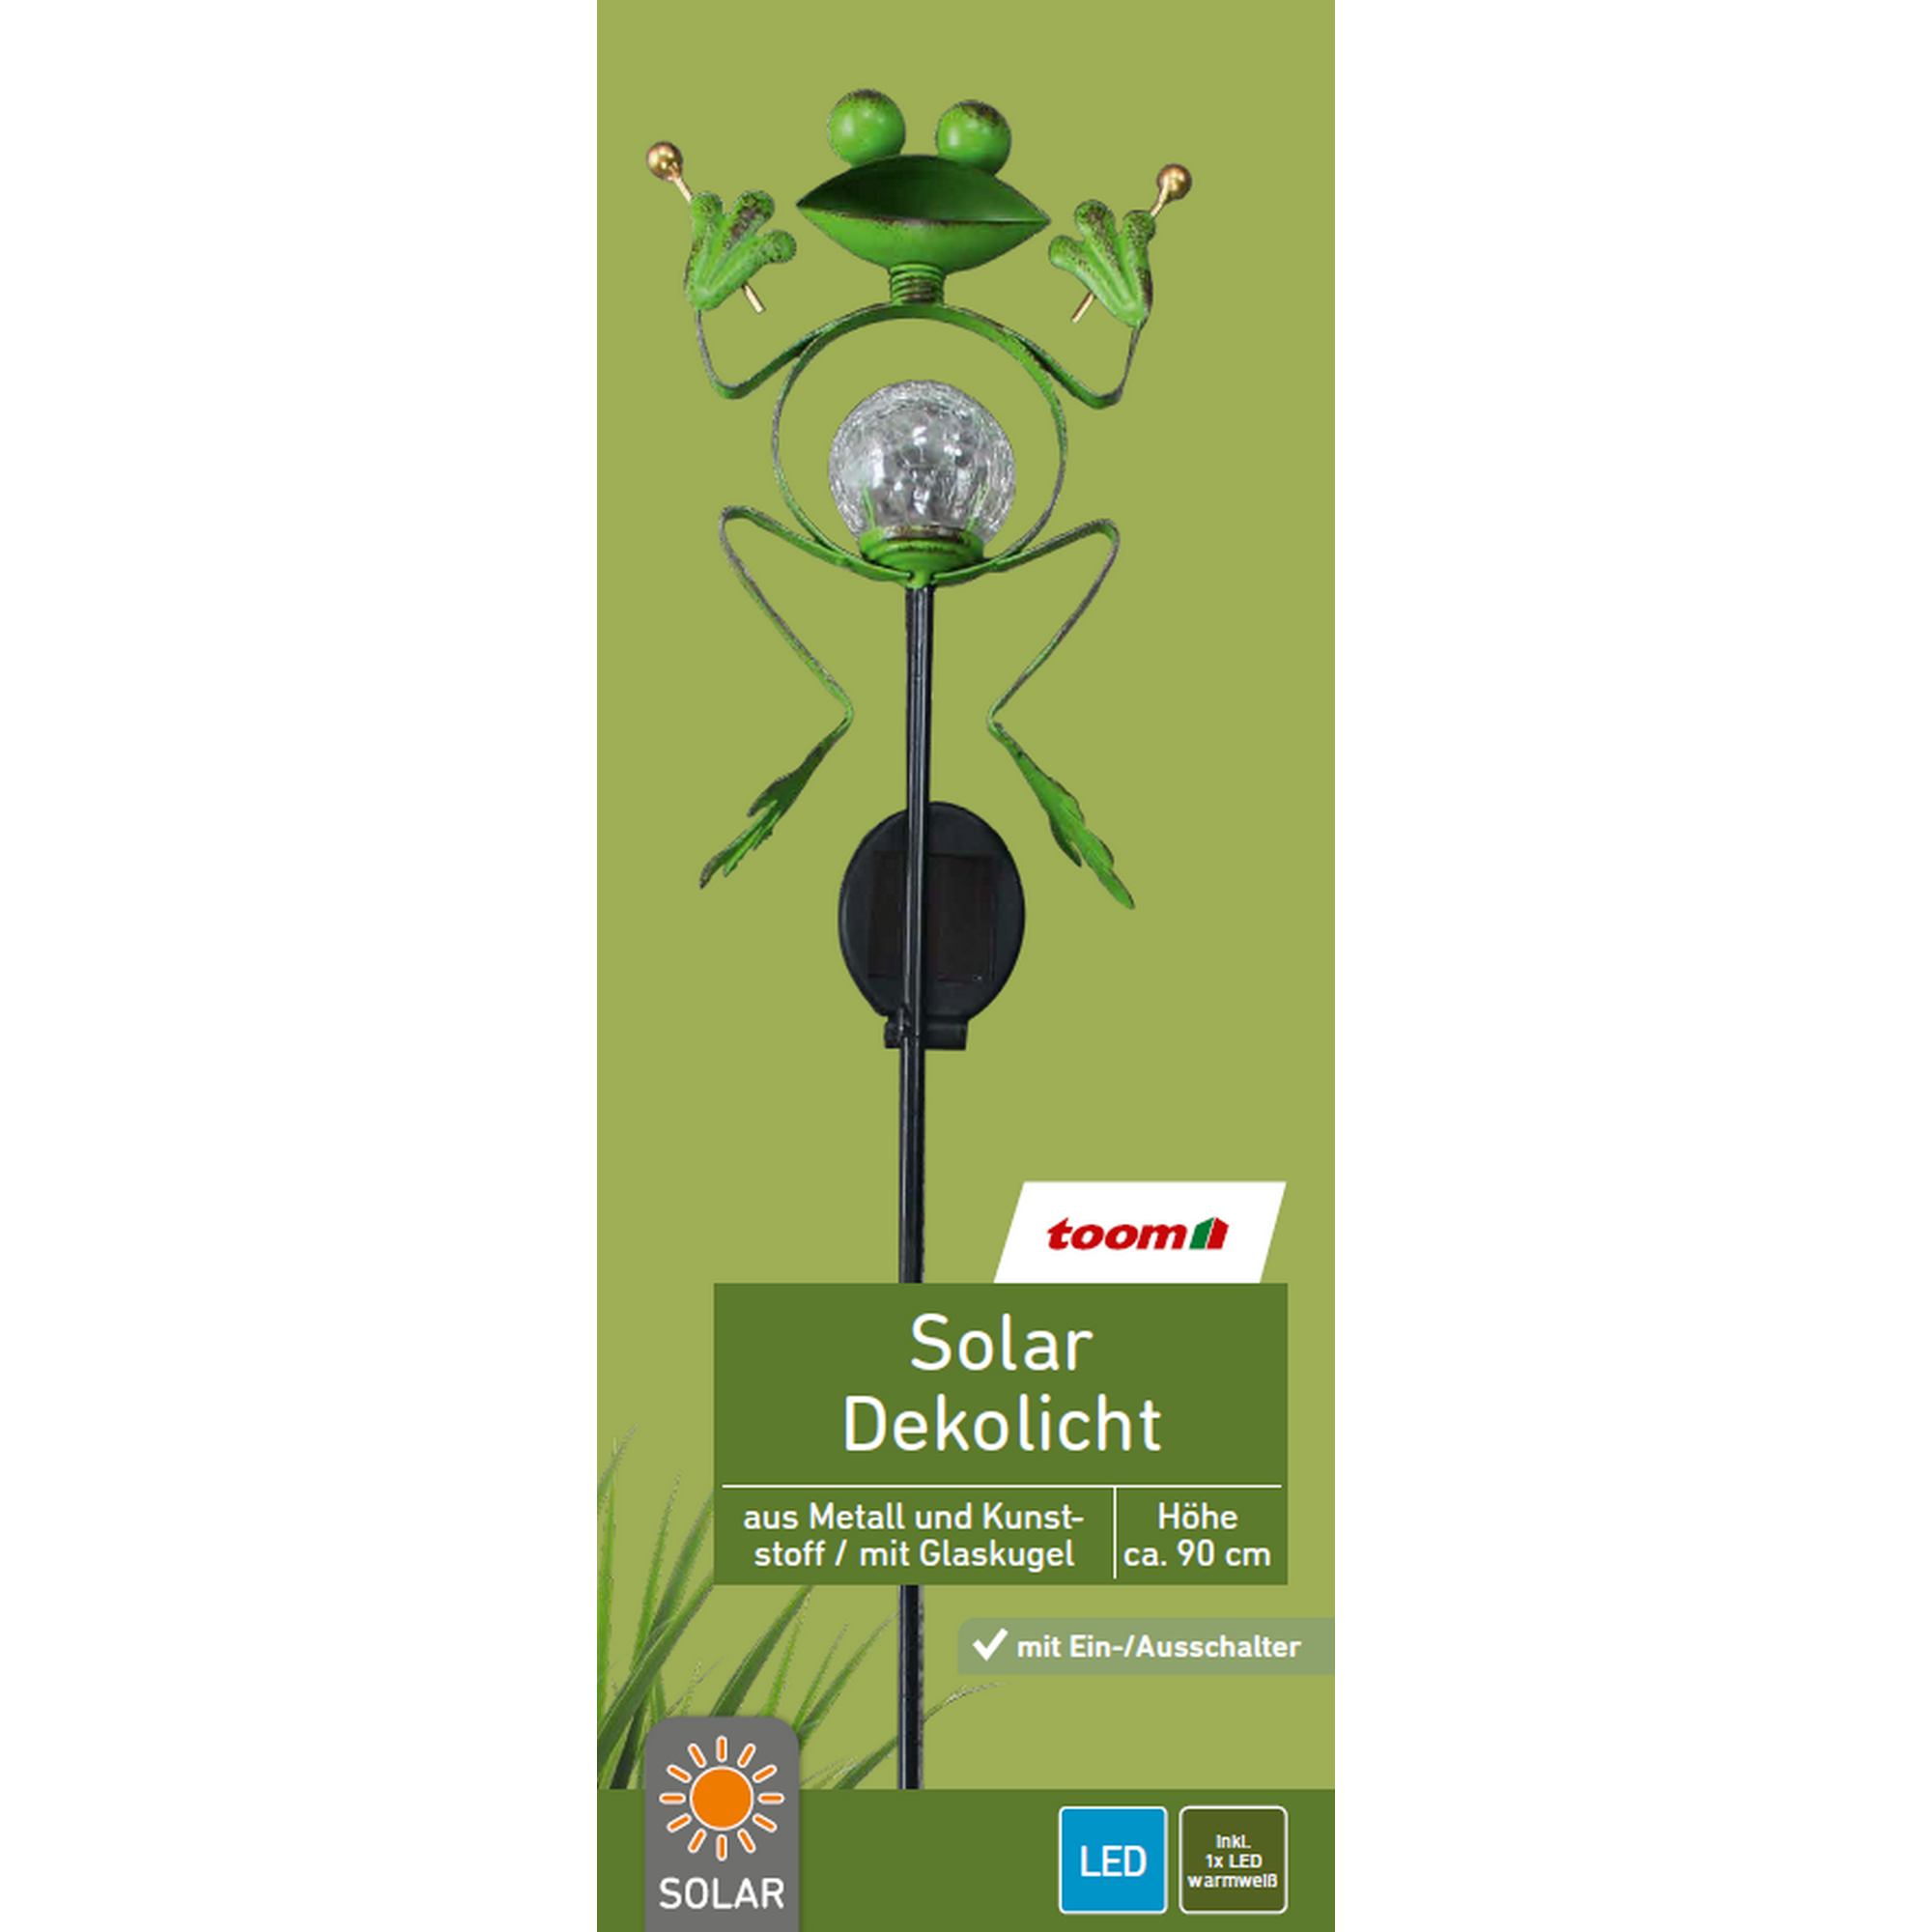 Solar-Dekoleuchte Frosch mit Schlagzeug grün 17,5 x 90 cm + product picture